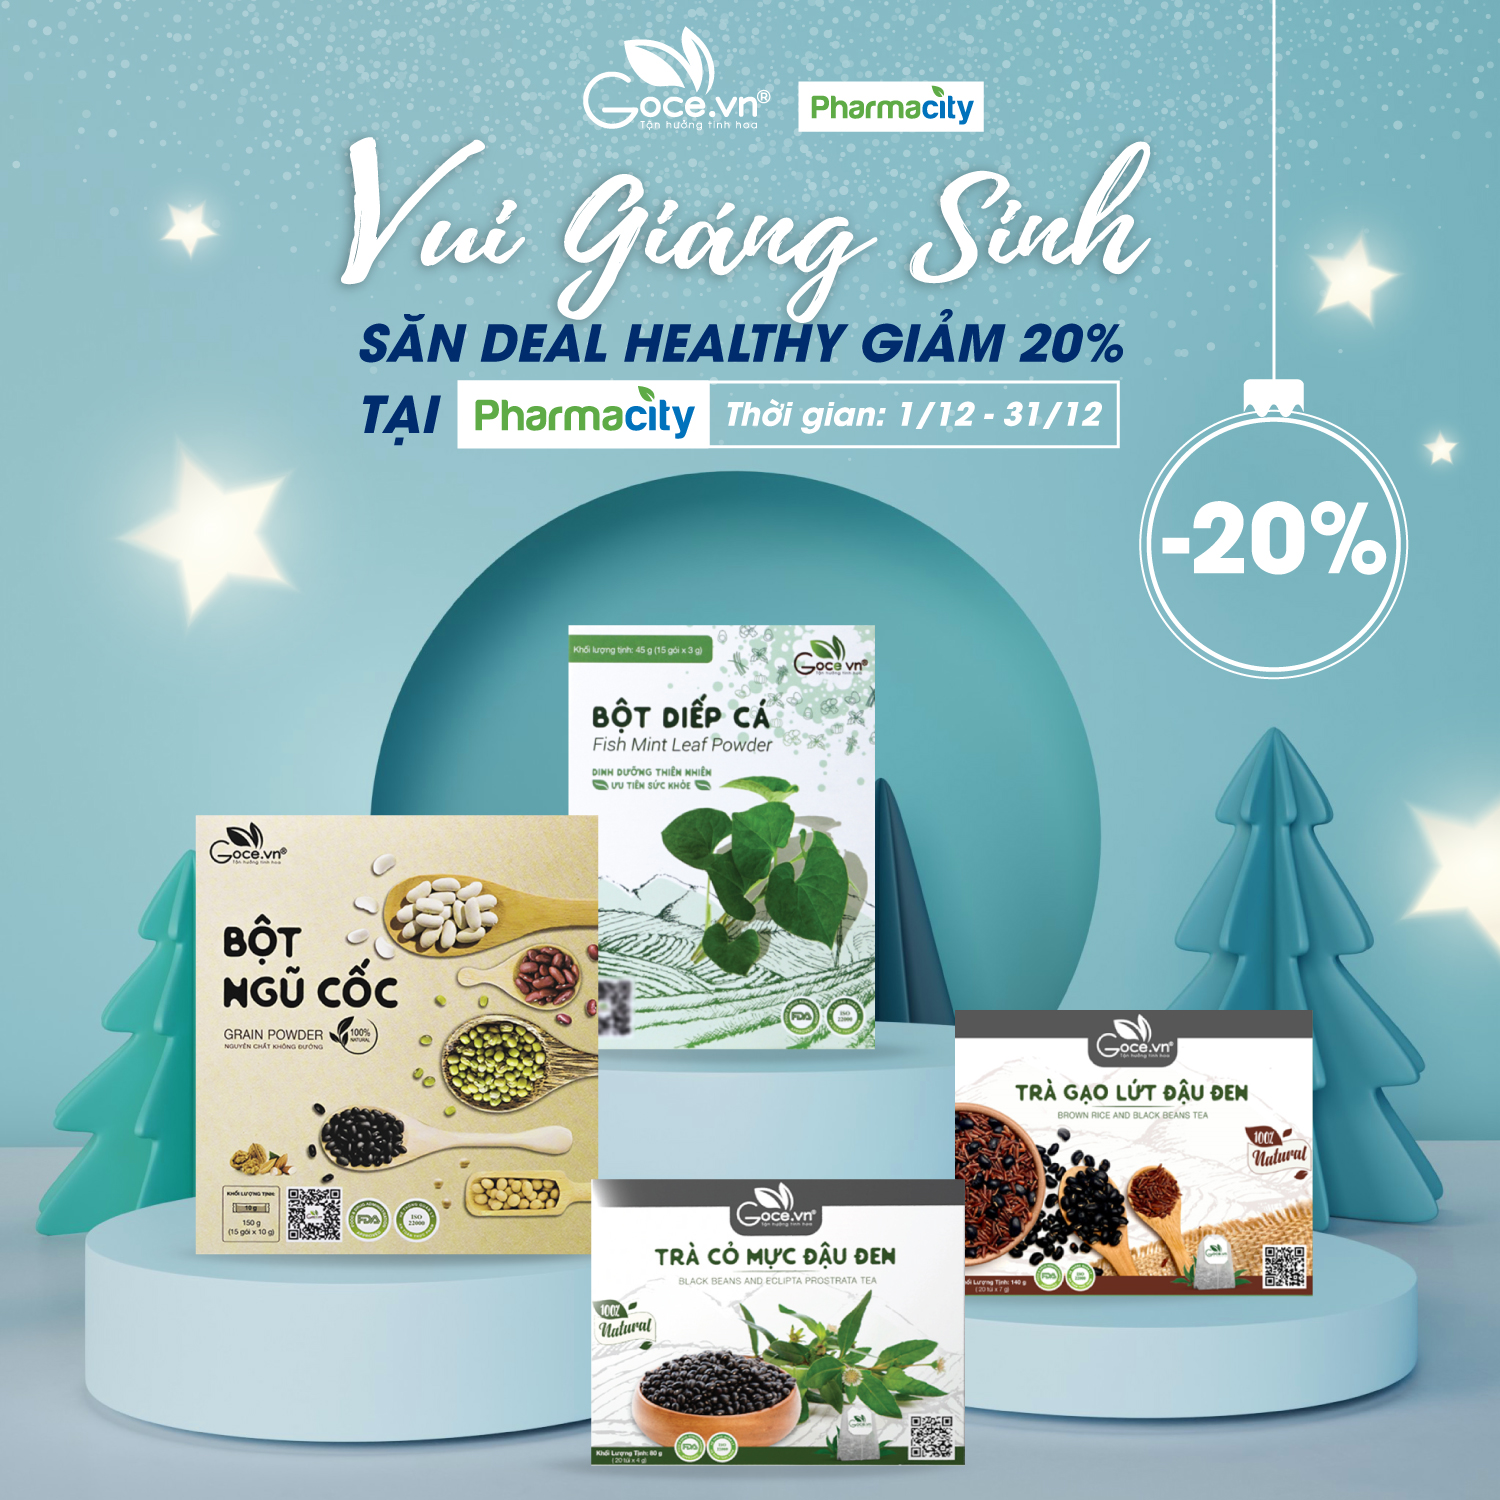 Vui Giáng Sinh - Săn deal healthy GIẢM 20% tại Pharmacity 